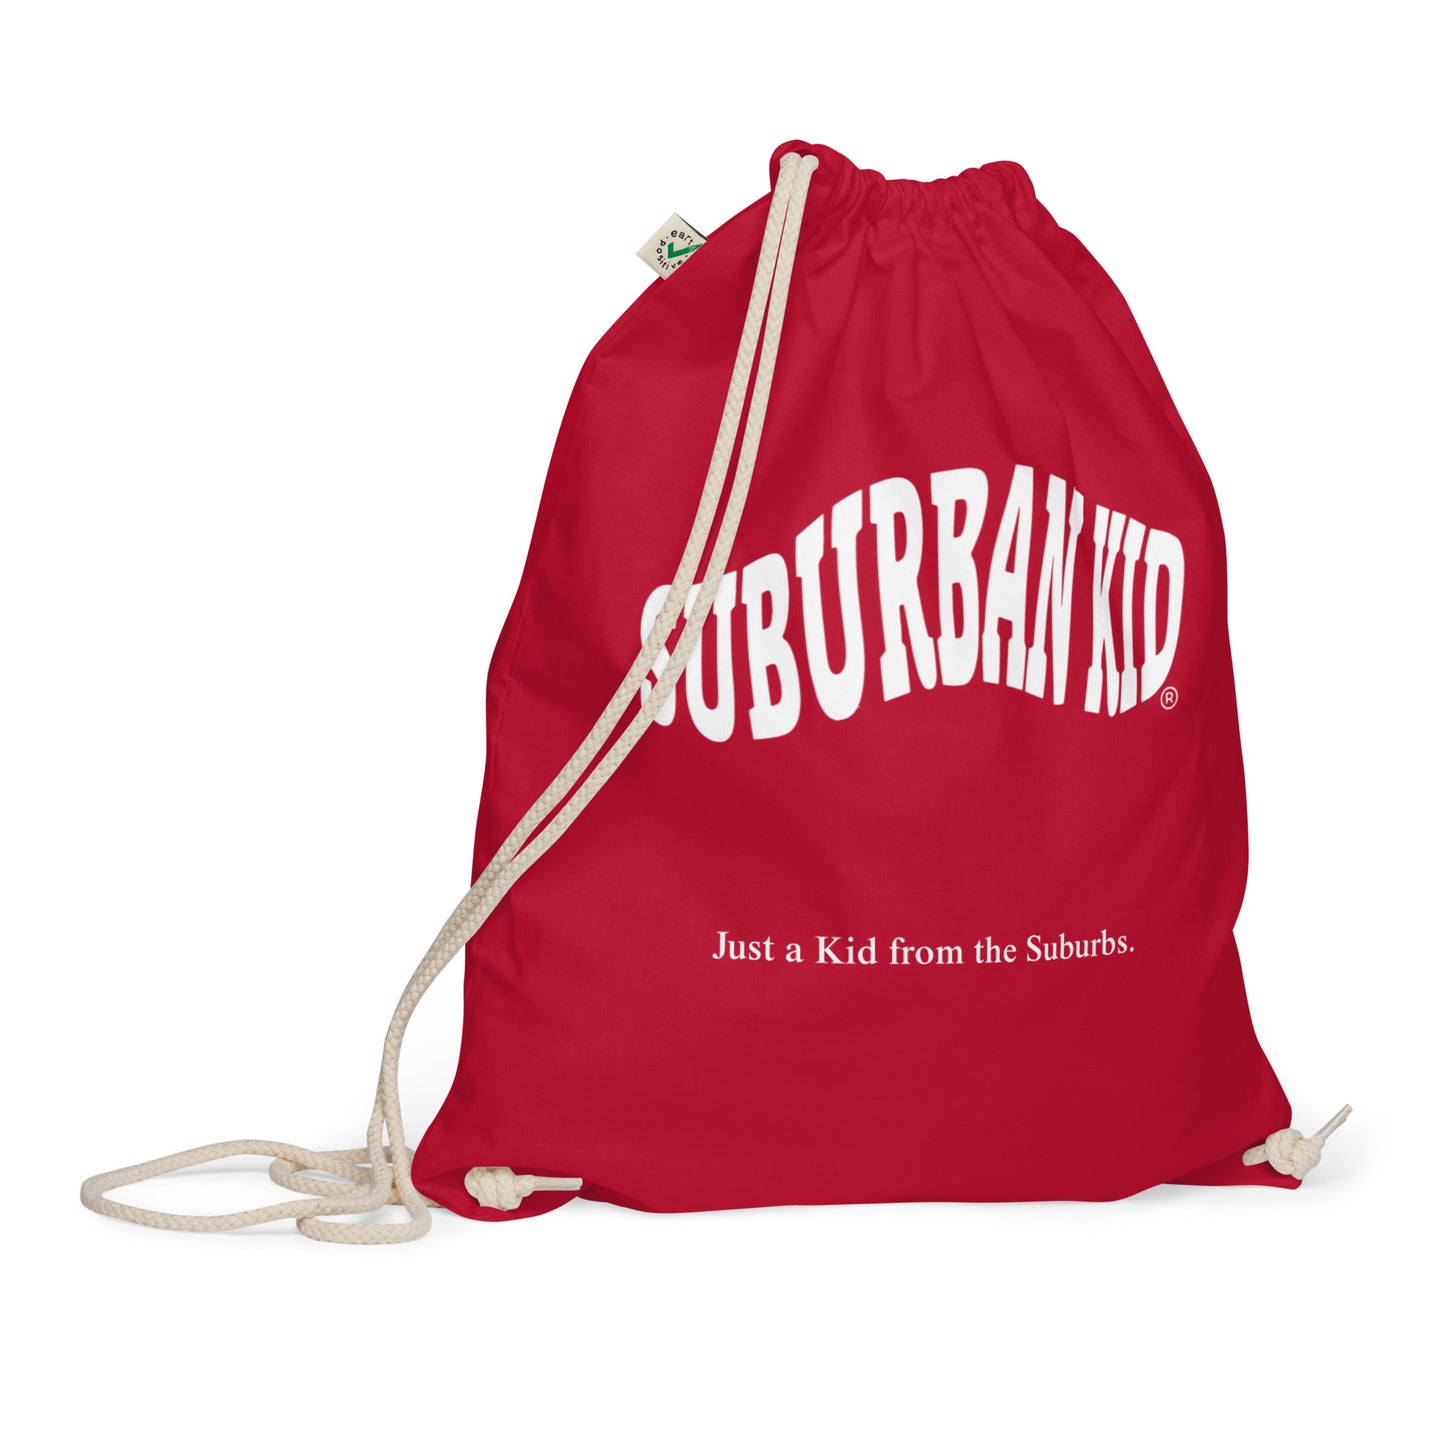 Suburban Kid Organic Cotton Drawstring Bag